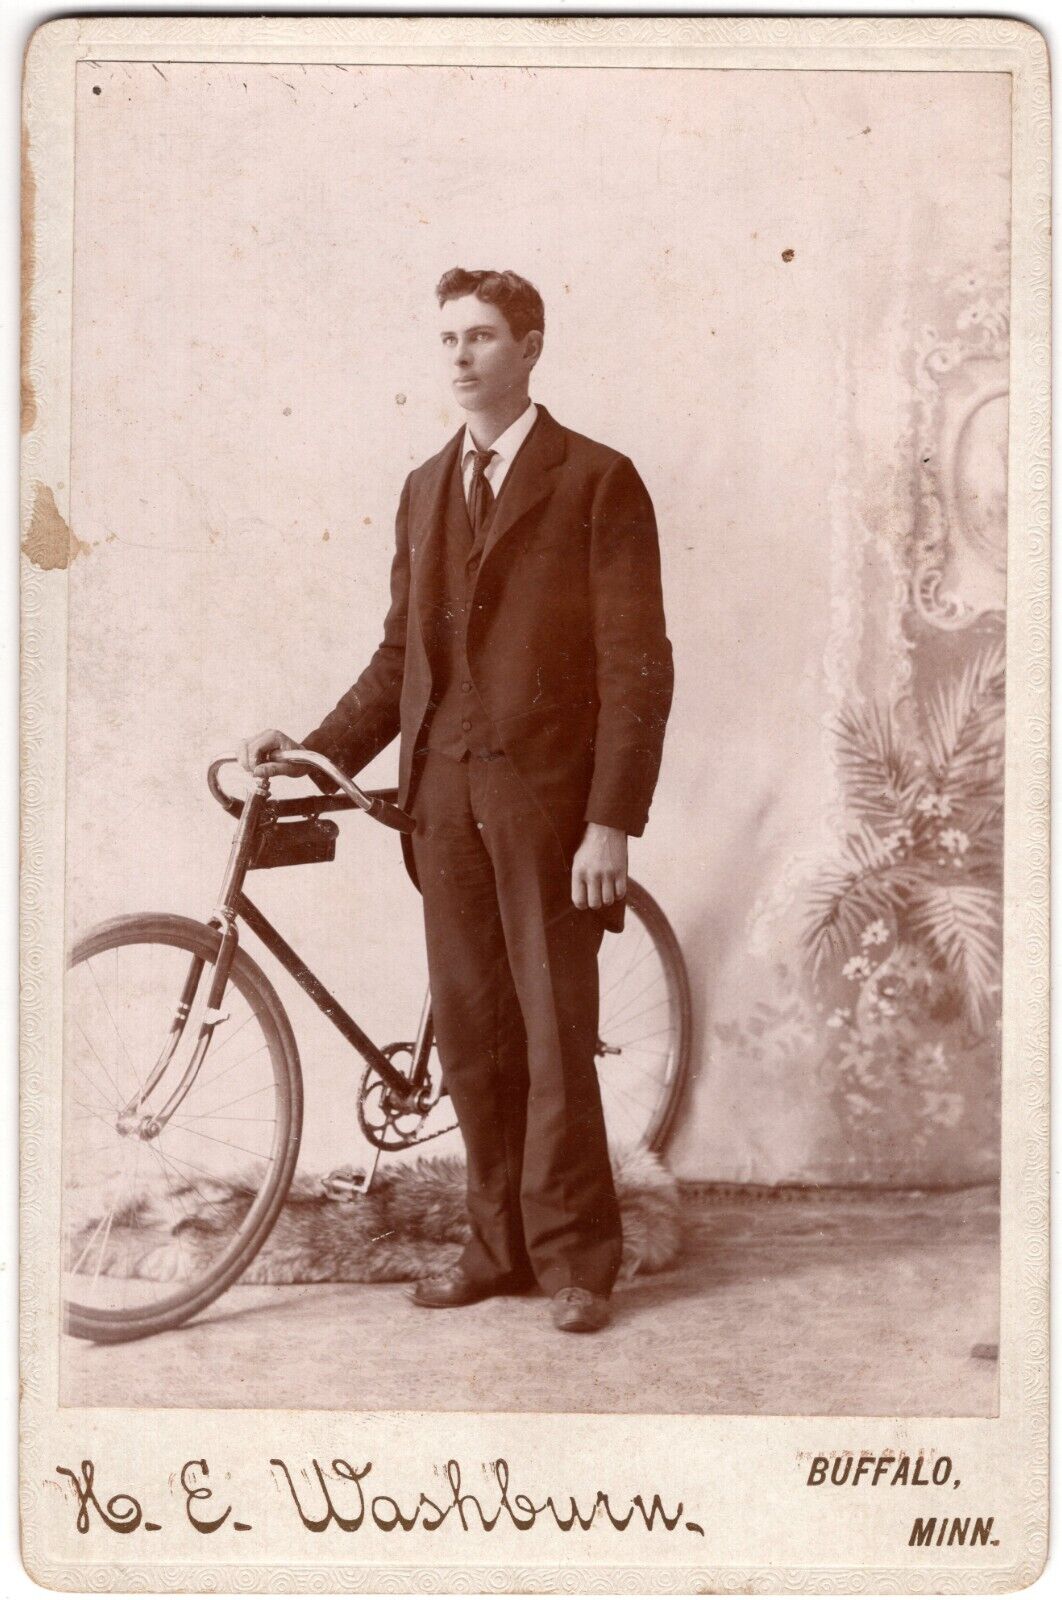 CIRCA 1890s CABINET CARD K.E. WASHBURN YOUNG MAN IN SUIT WITH BIKE BUFFALO MINN.